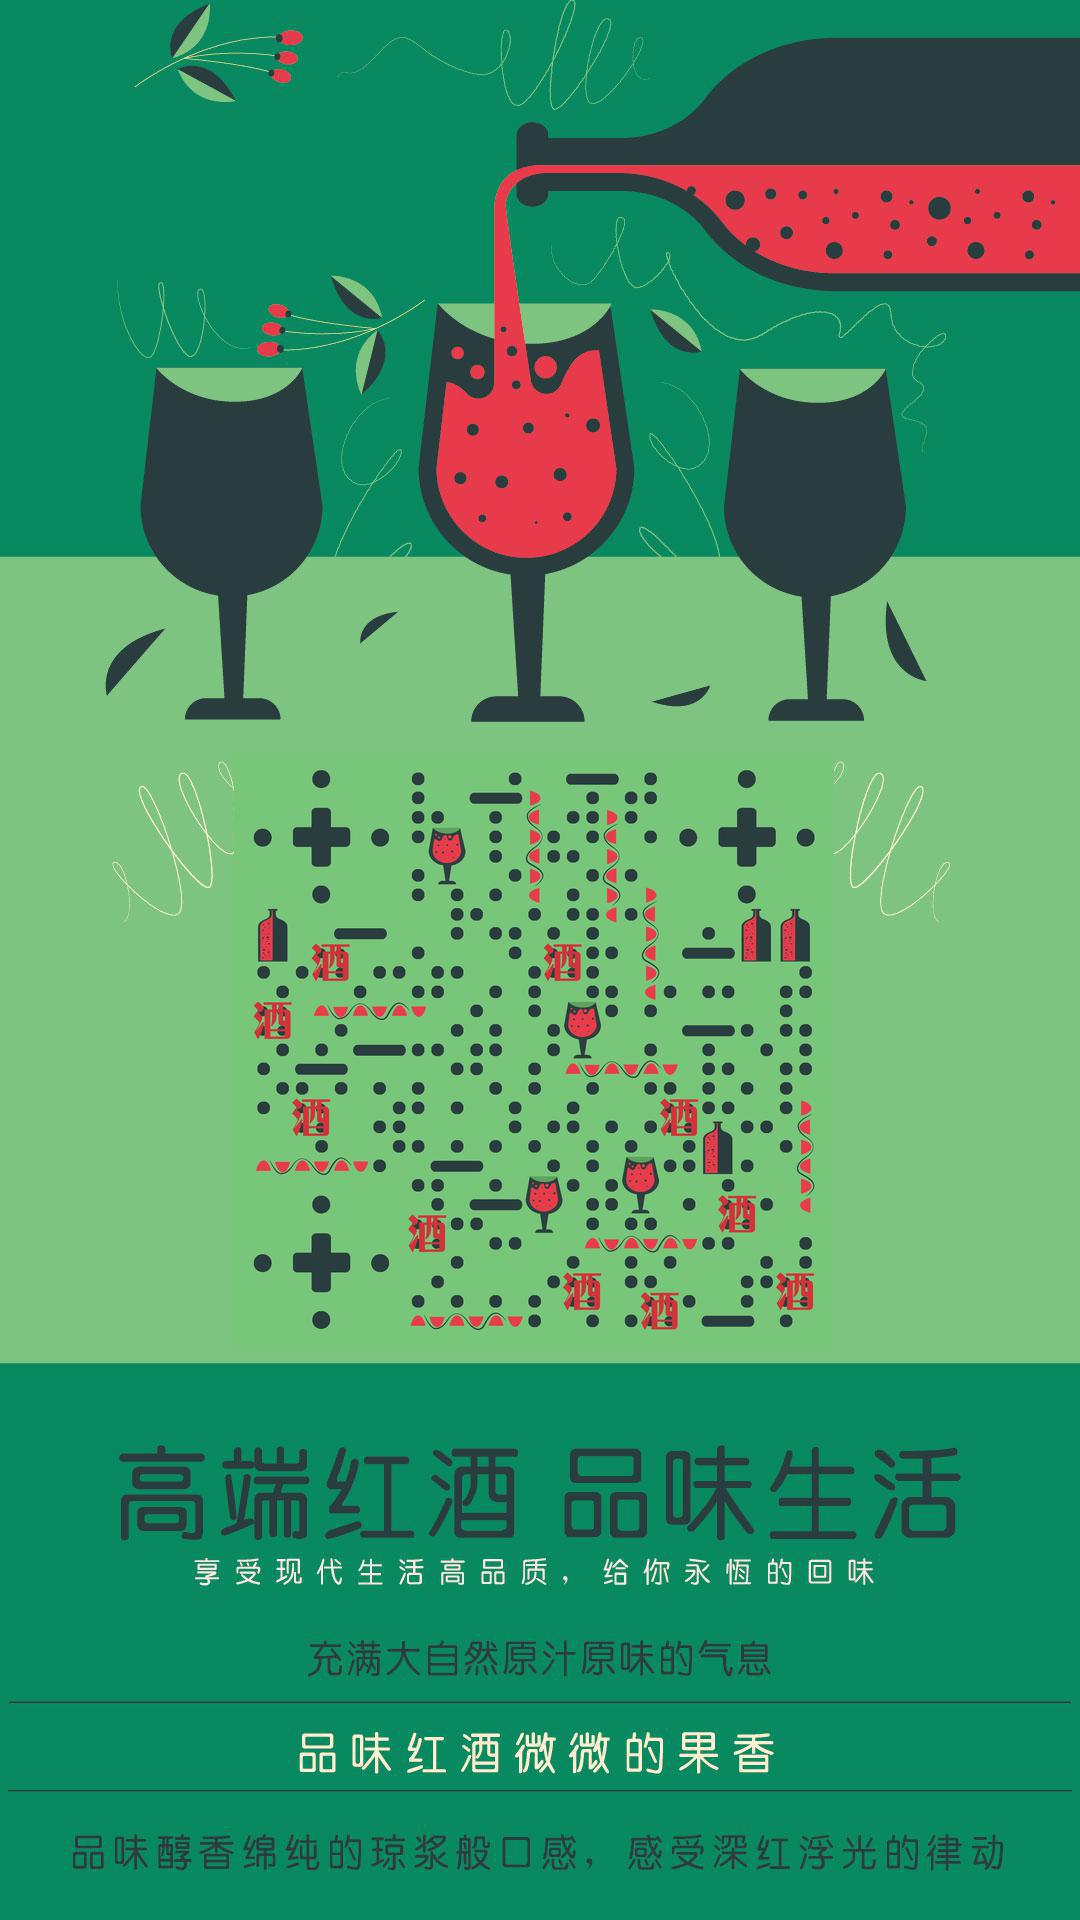 高端红酒品味生活自然气息二维码-手机海报-平面静态